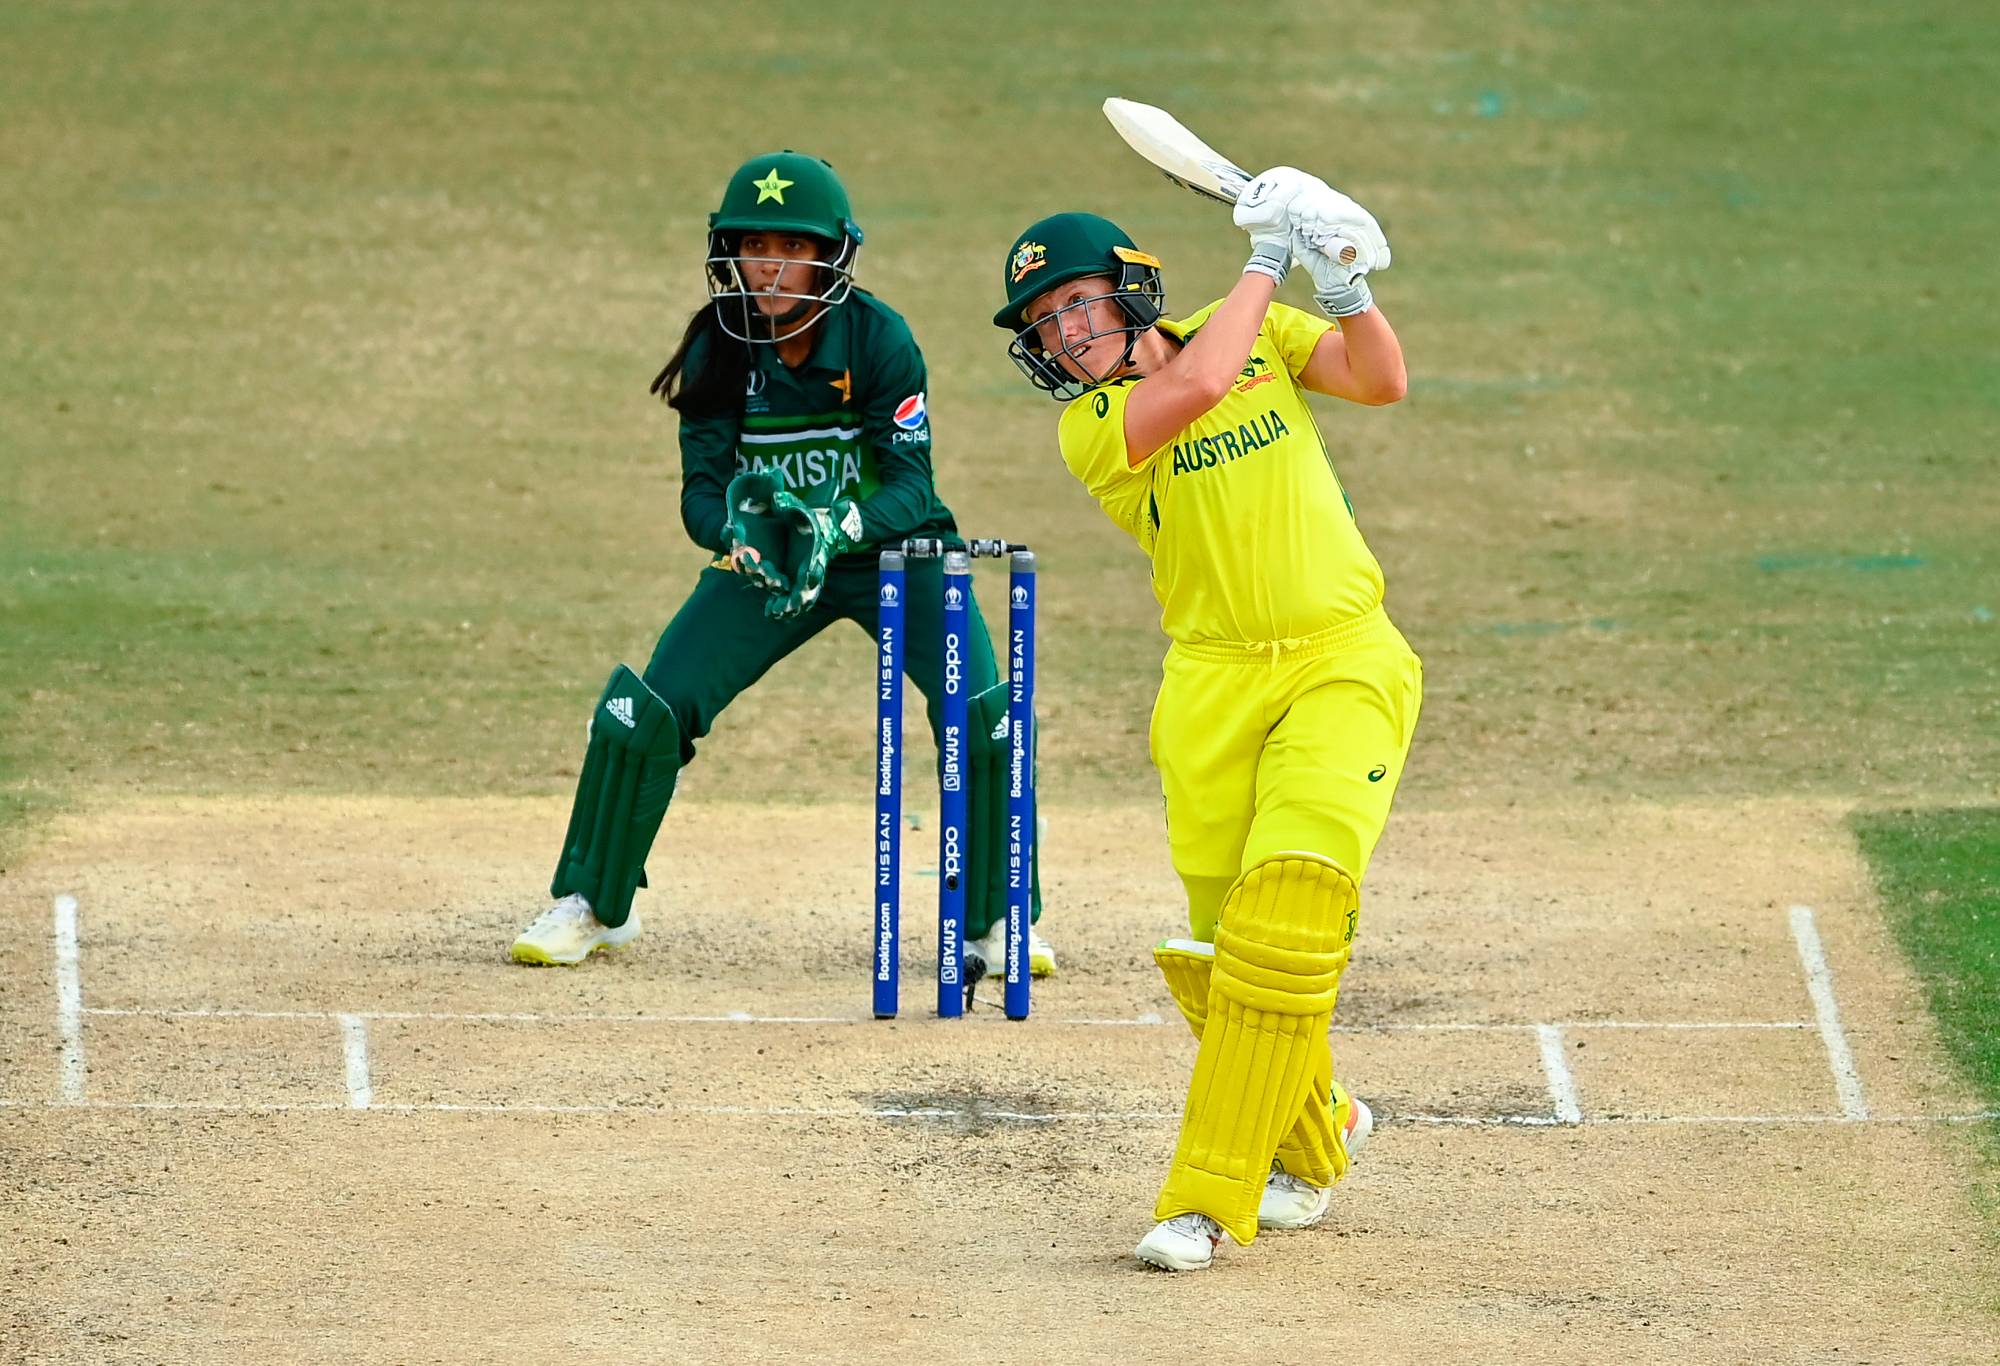 Alyssa Healy dari Australia memukul sementara Sidra Nawaz dari Pakistan selama pertandingan Piala Dunia Kriket Wanita ICC 2022 antara Australia dan Pakistan di Bay Oval pada 08 Maret 2022 di Tauranga, Selandia Baru.  (Foto oleh Hannah Peters-ICC/ICC via Getty Images)